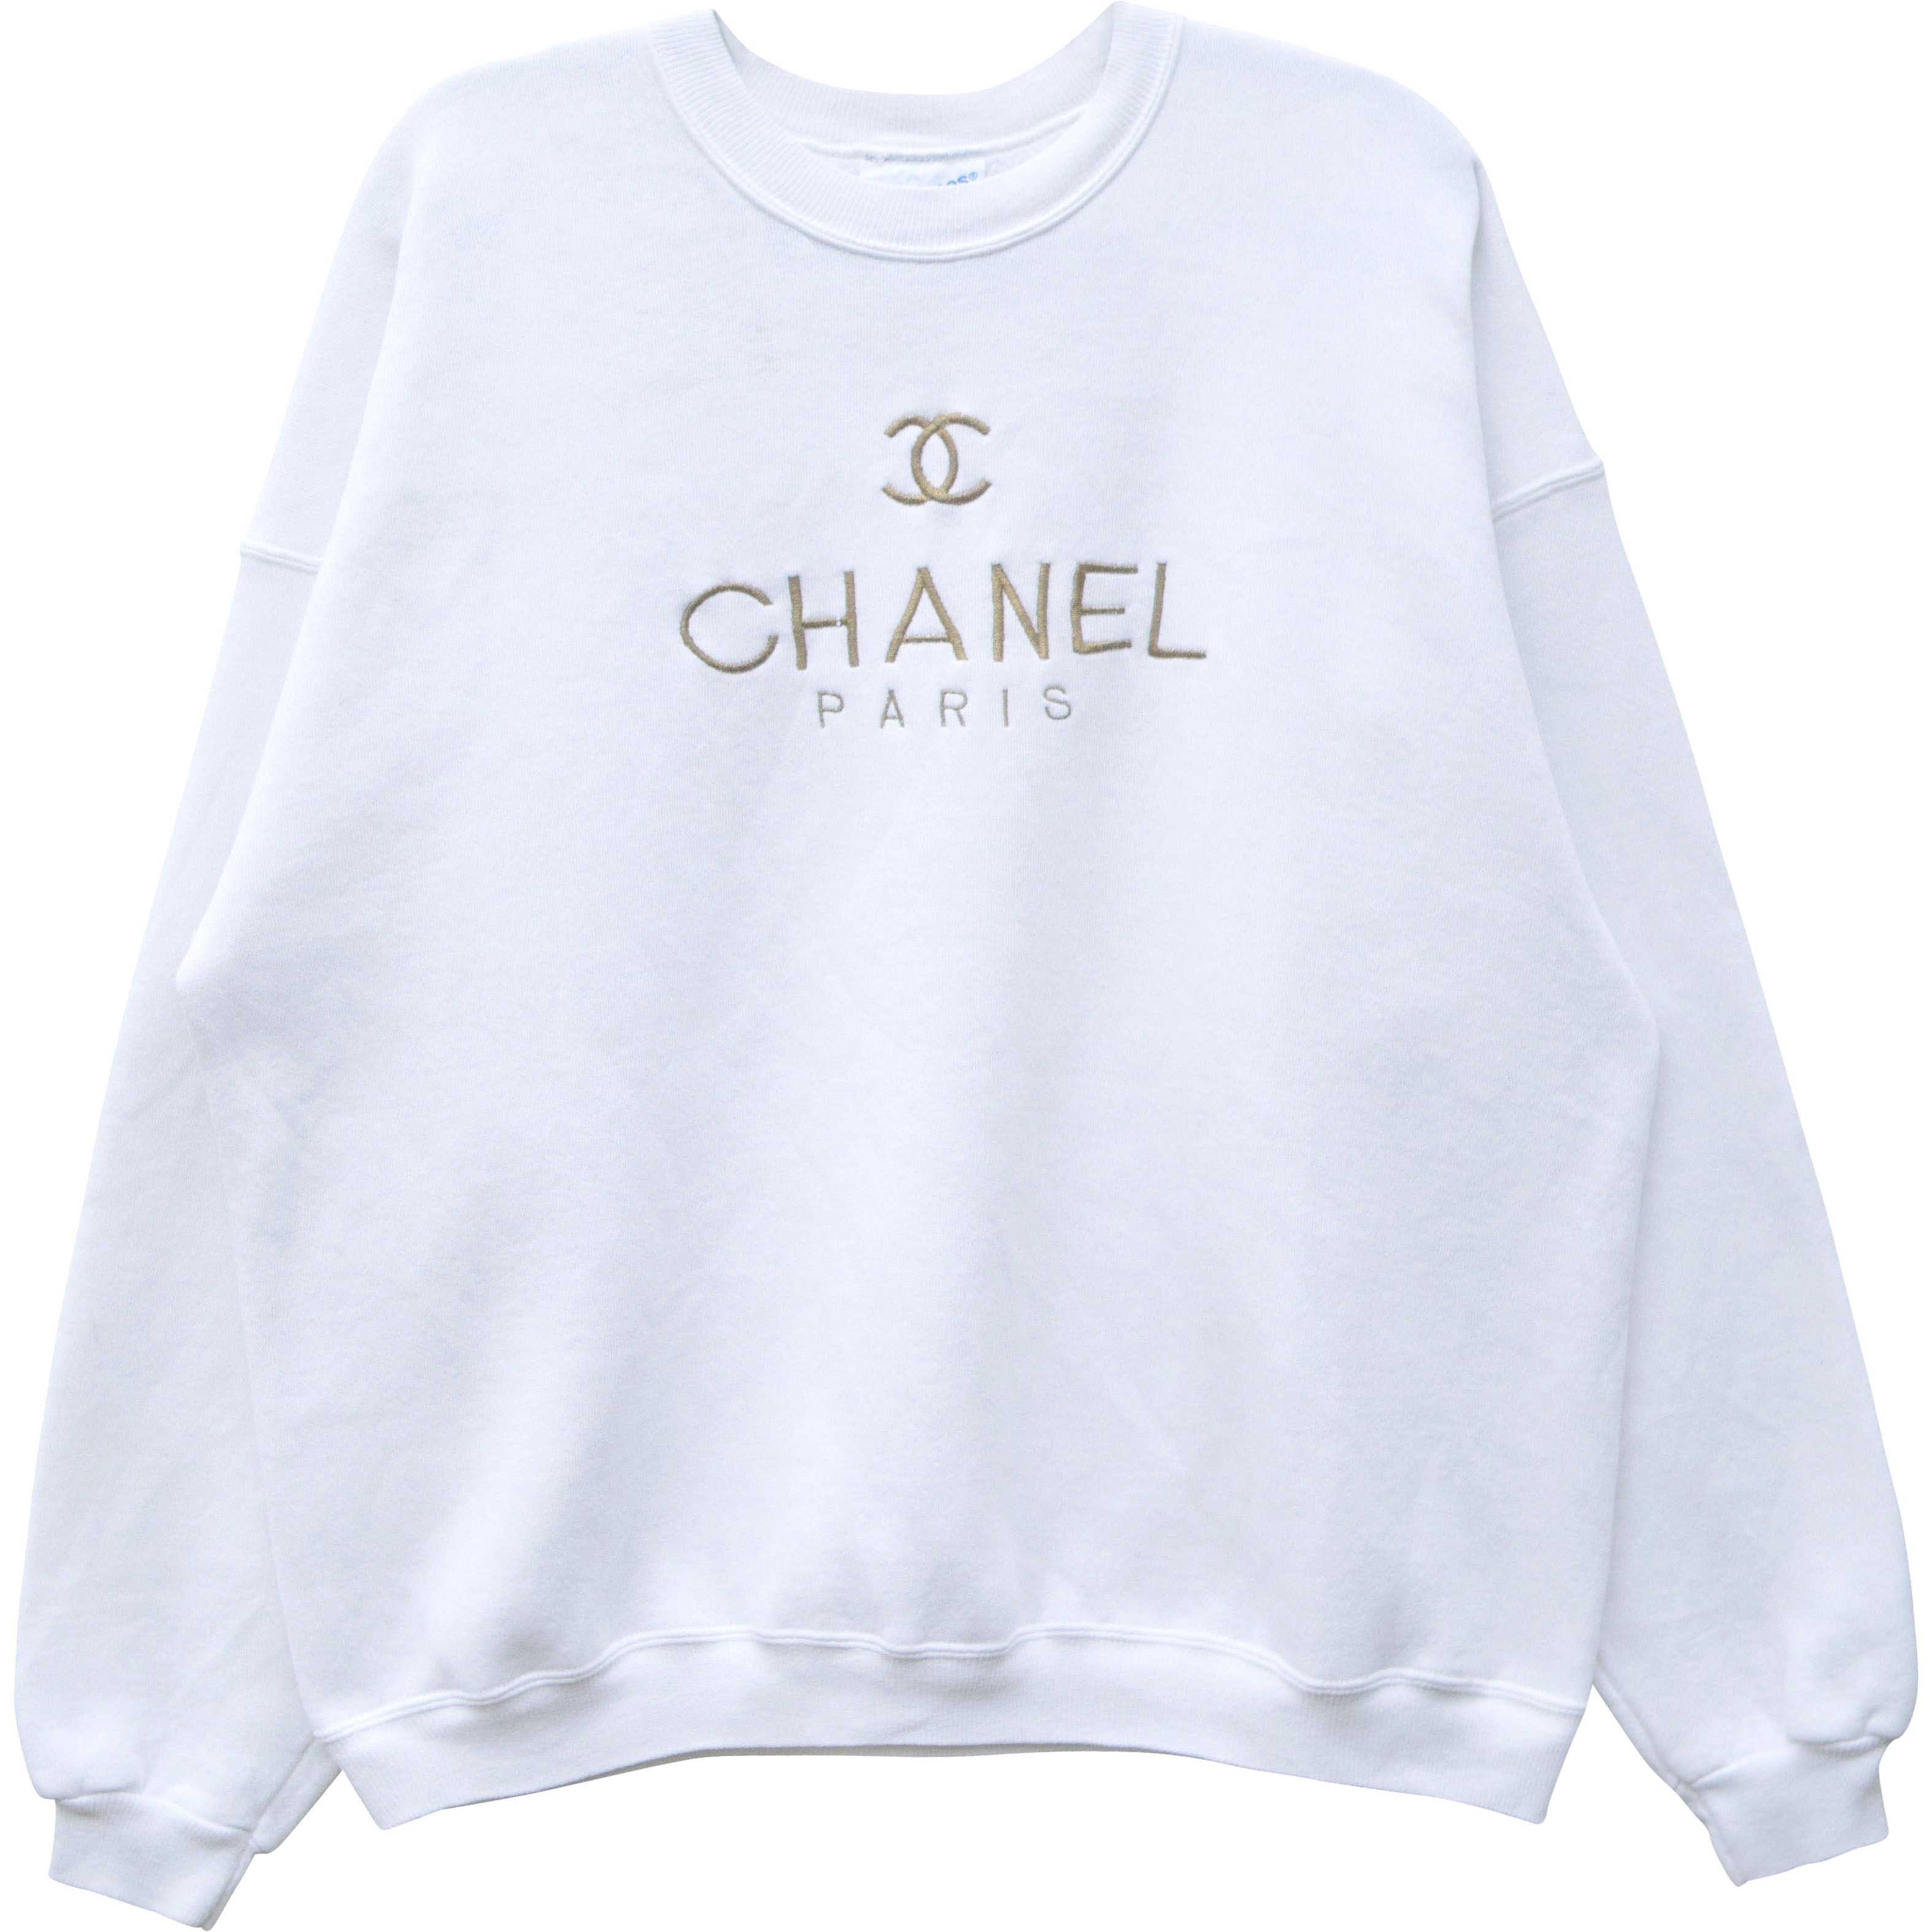 Chanel AW 2001 Mademoiselle N°5 Sweatshirt · INTO